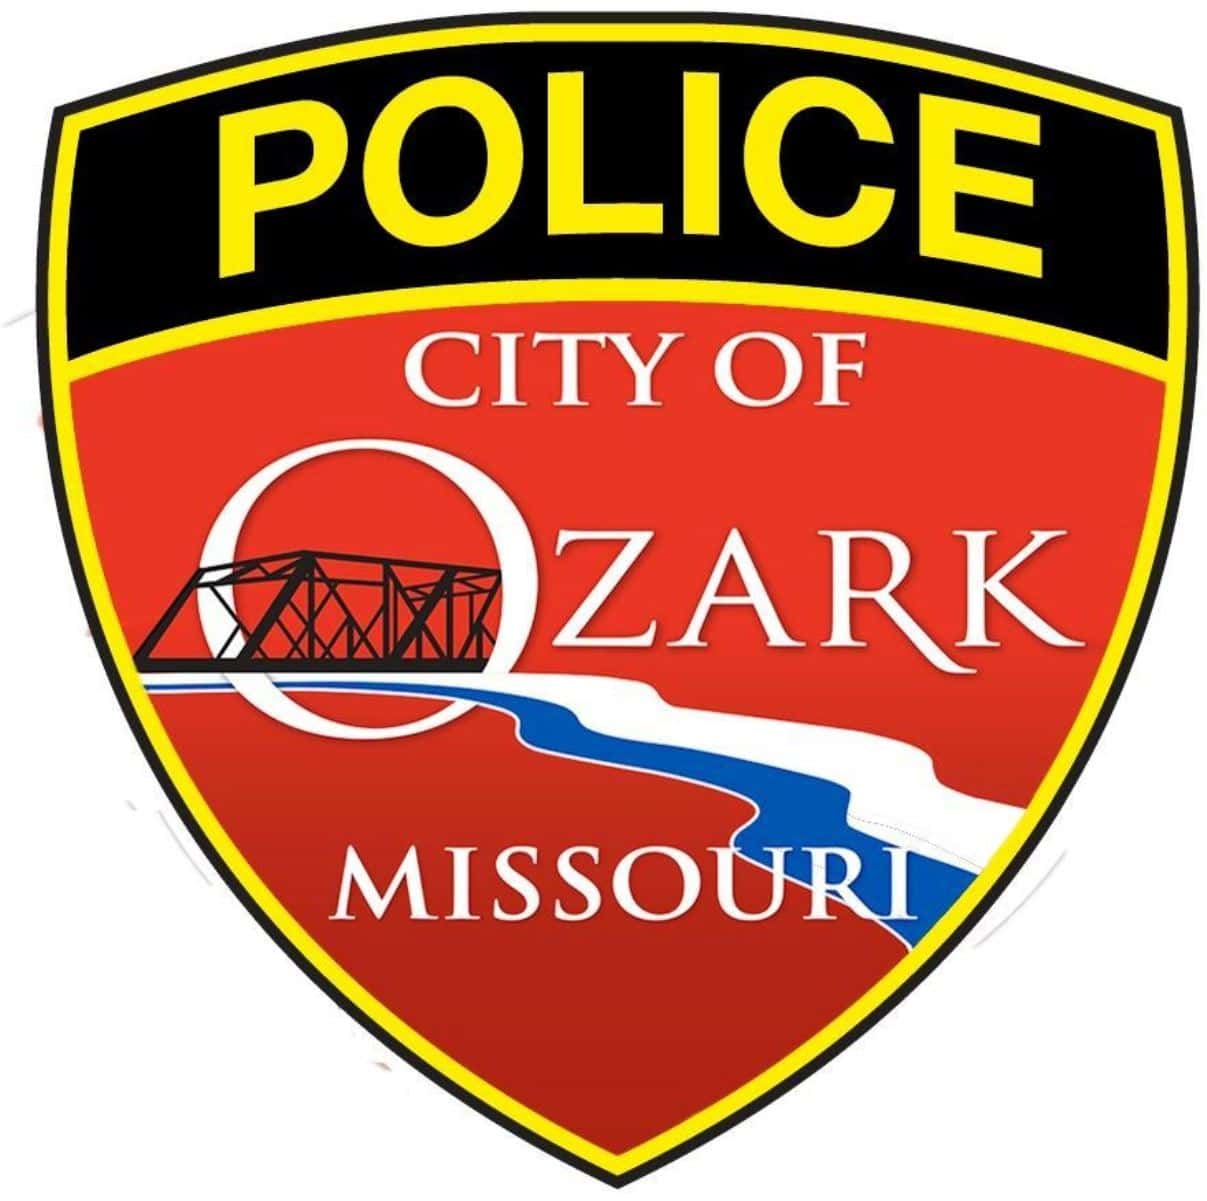 ozark-police-logo-1-24-19